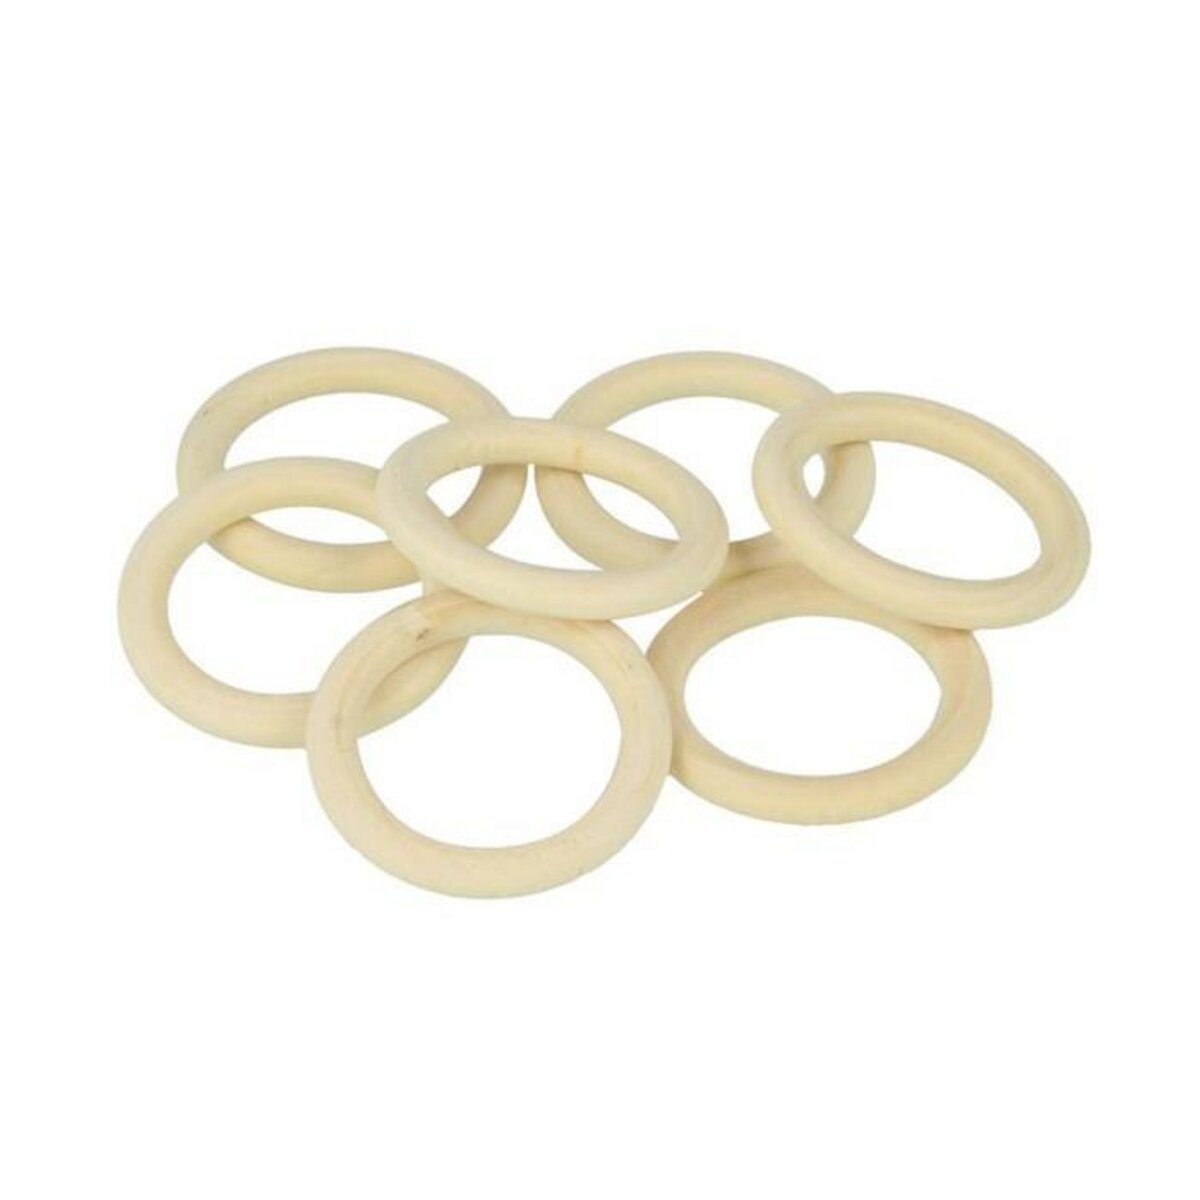 Artemio 7 anneaux en bois 30 mm